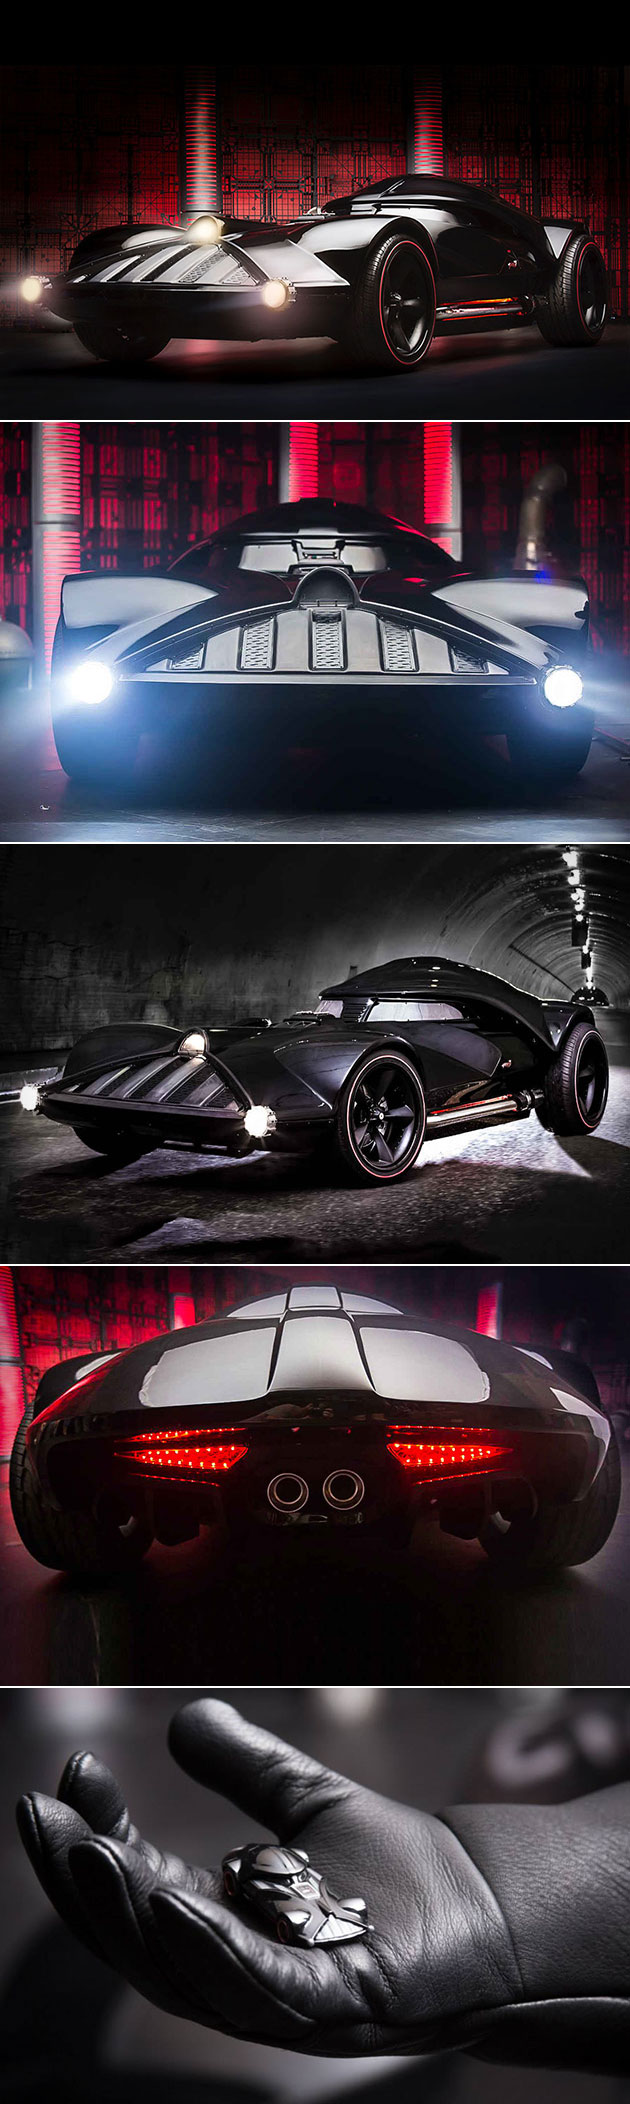 Darth Vader Car